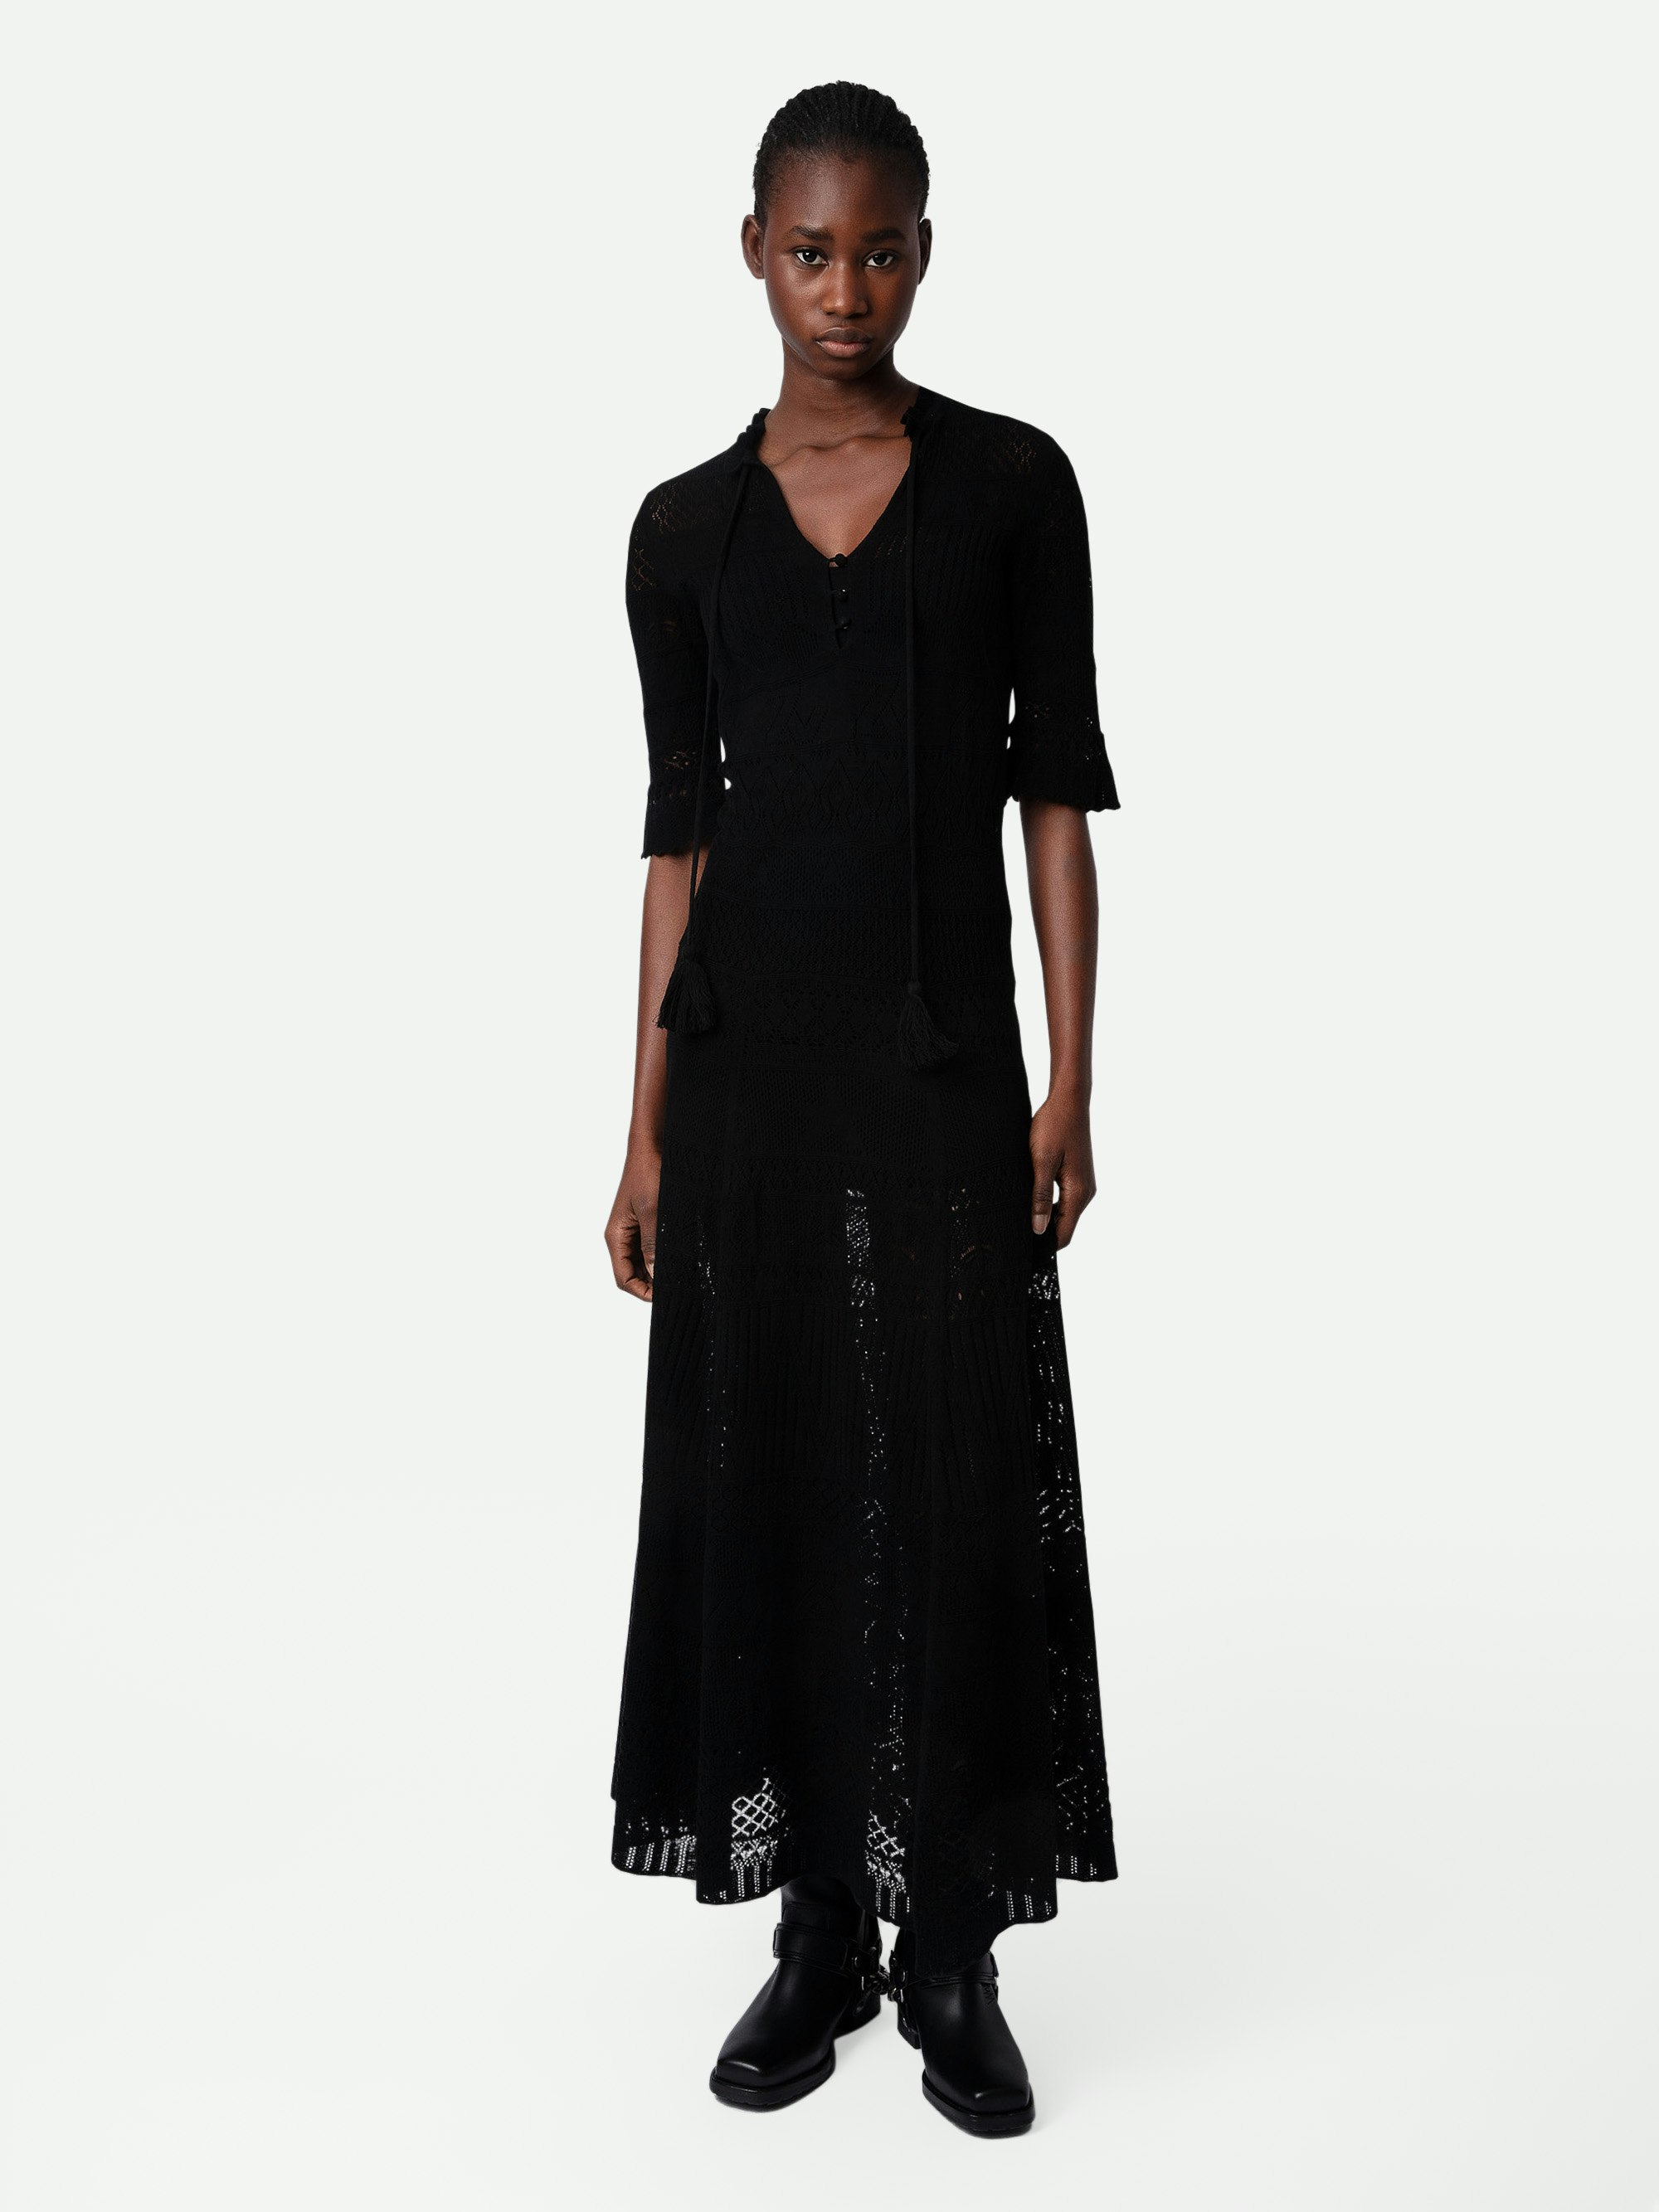 Vestido Memphis - Vestido negro largo de ganchillo de algodón con punto calado y cintas con borlas.